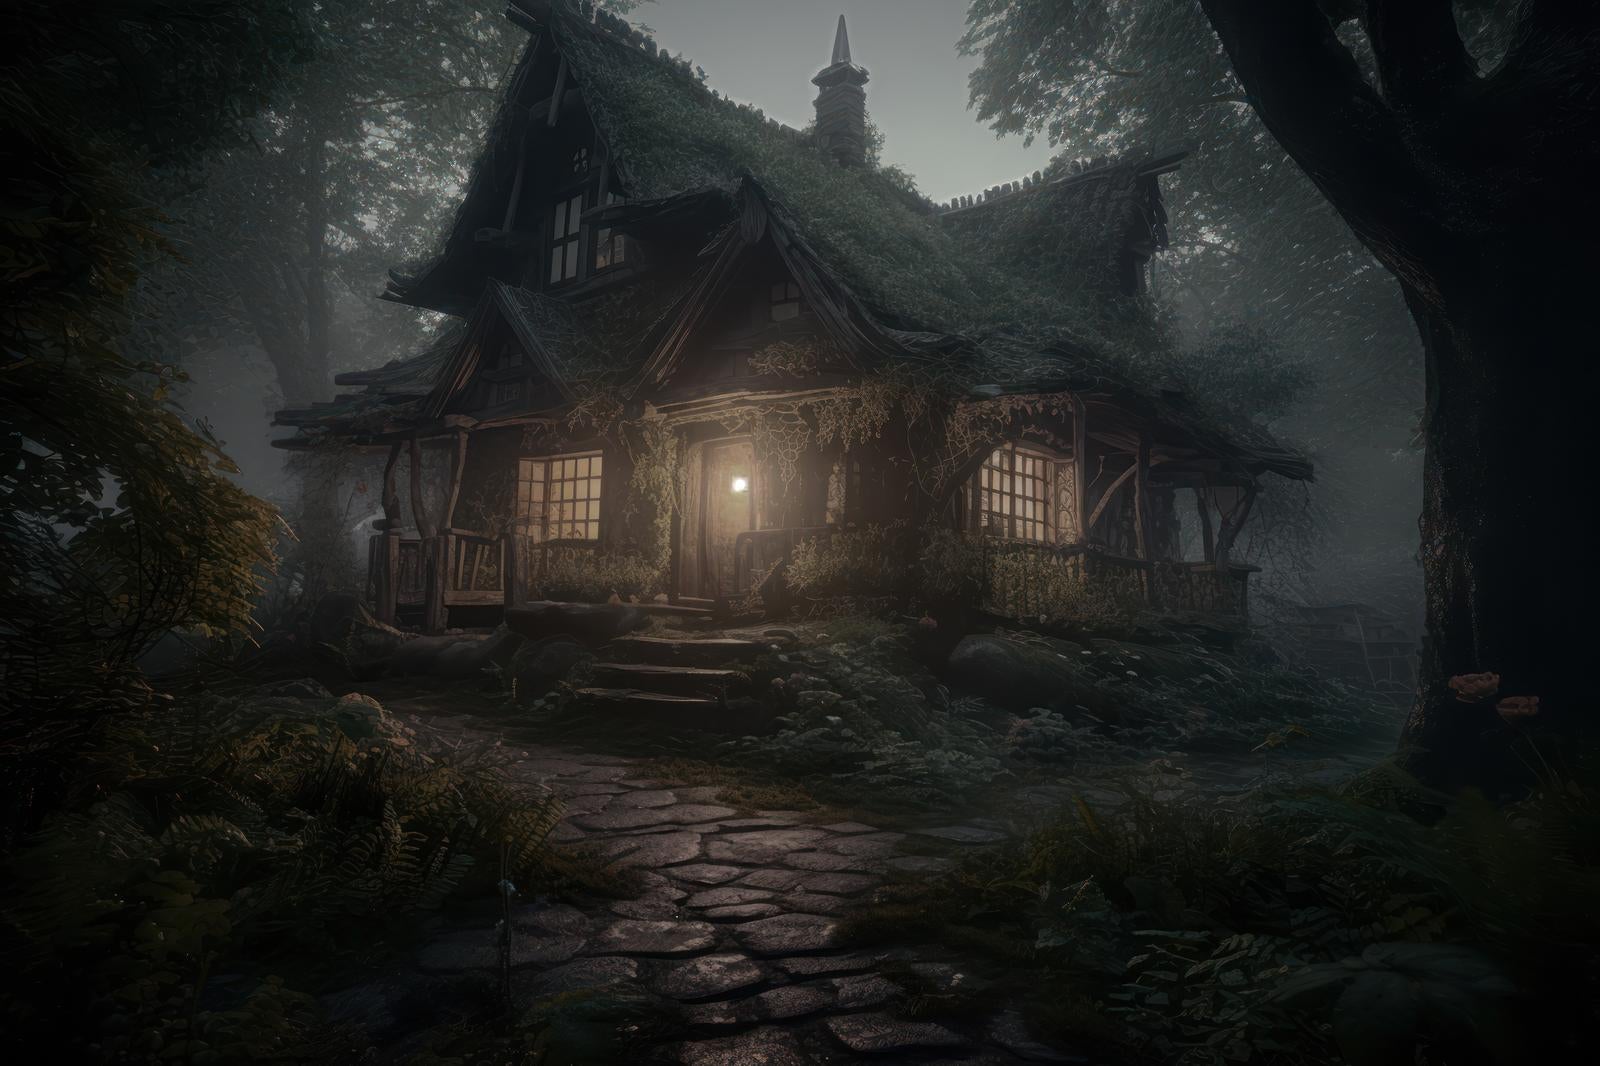 「山の家の一夜、霧と灯りの中で」の写真